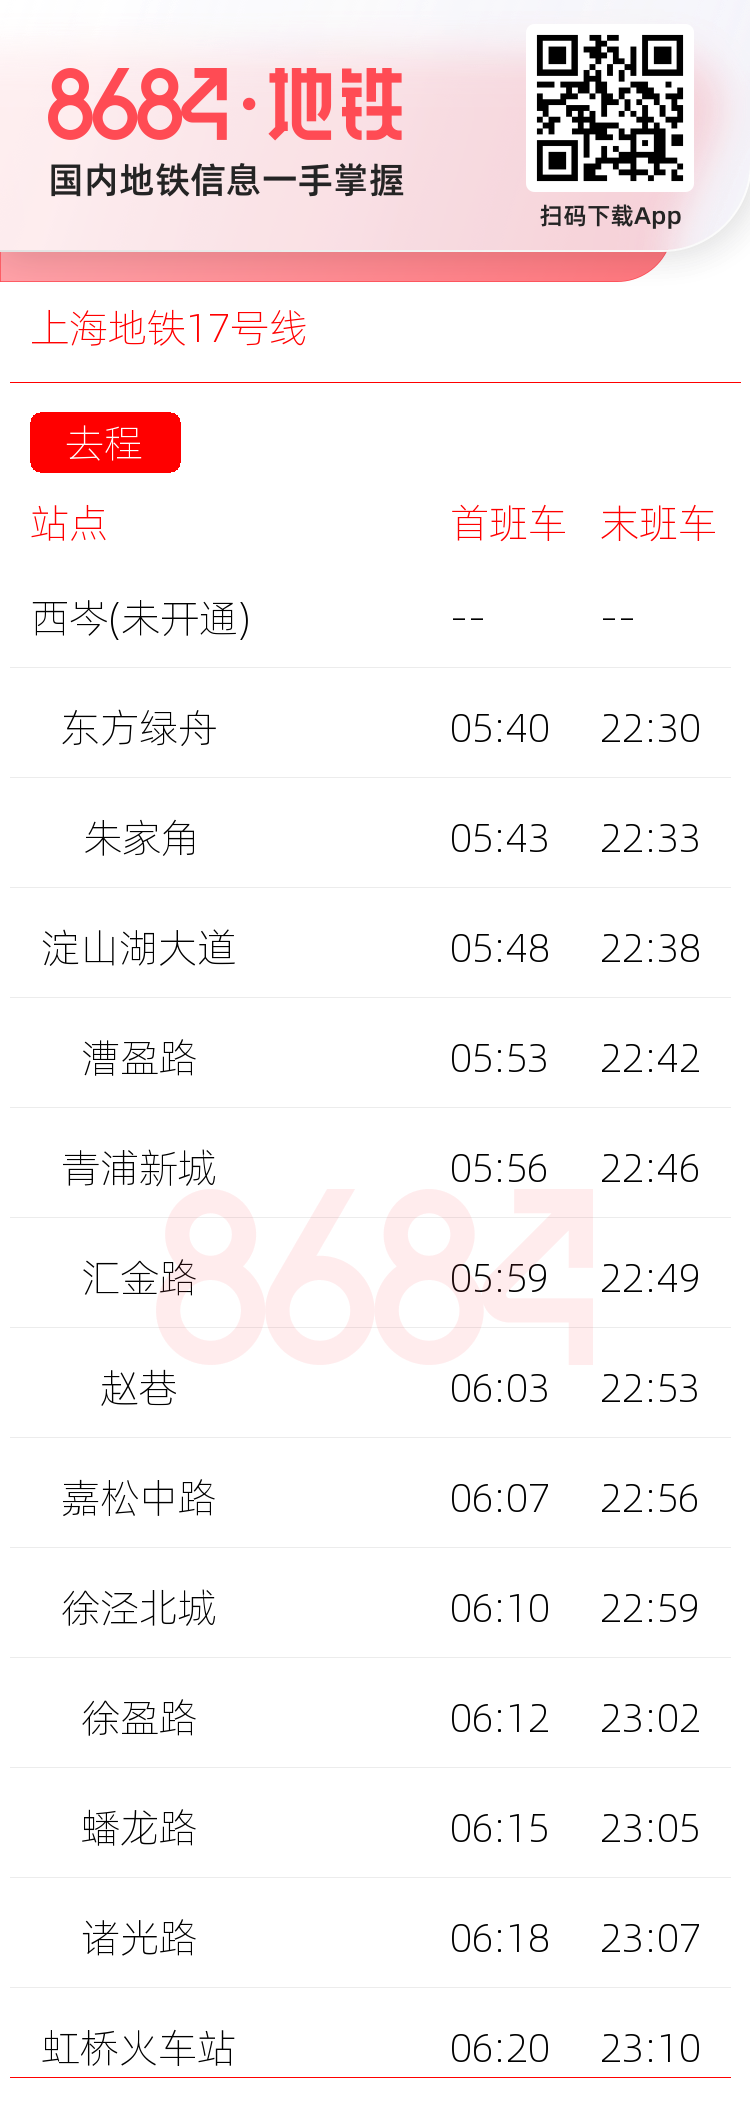 上海地铁17号线运营时间表